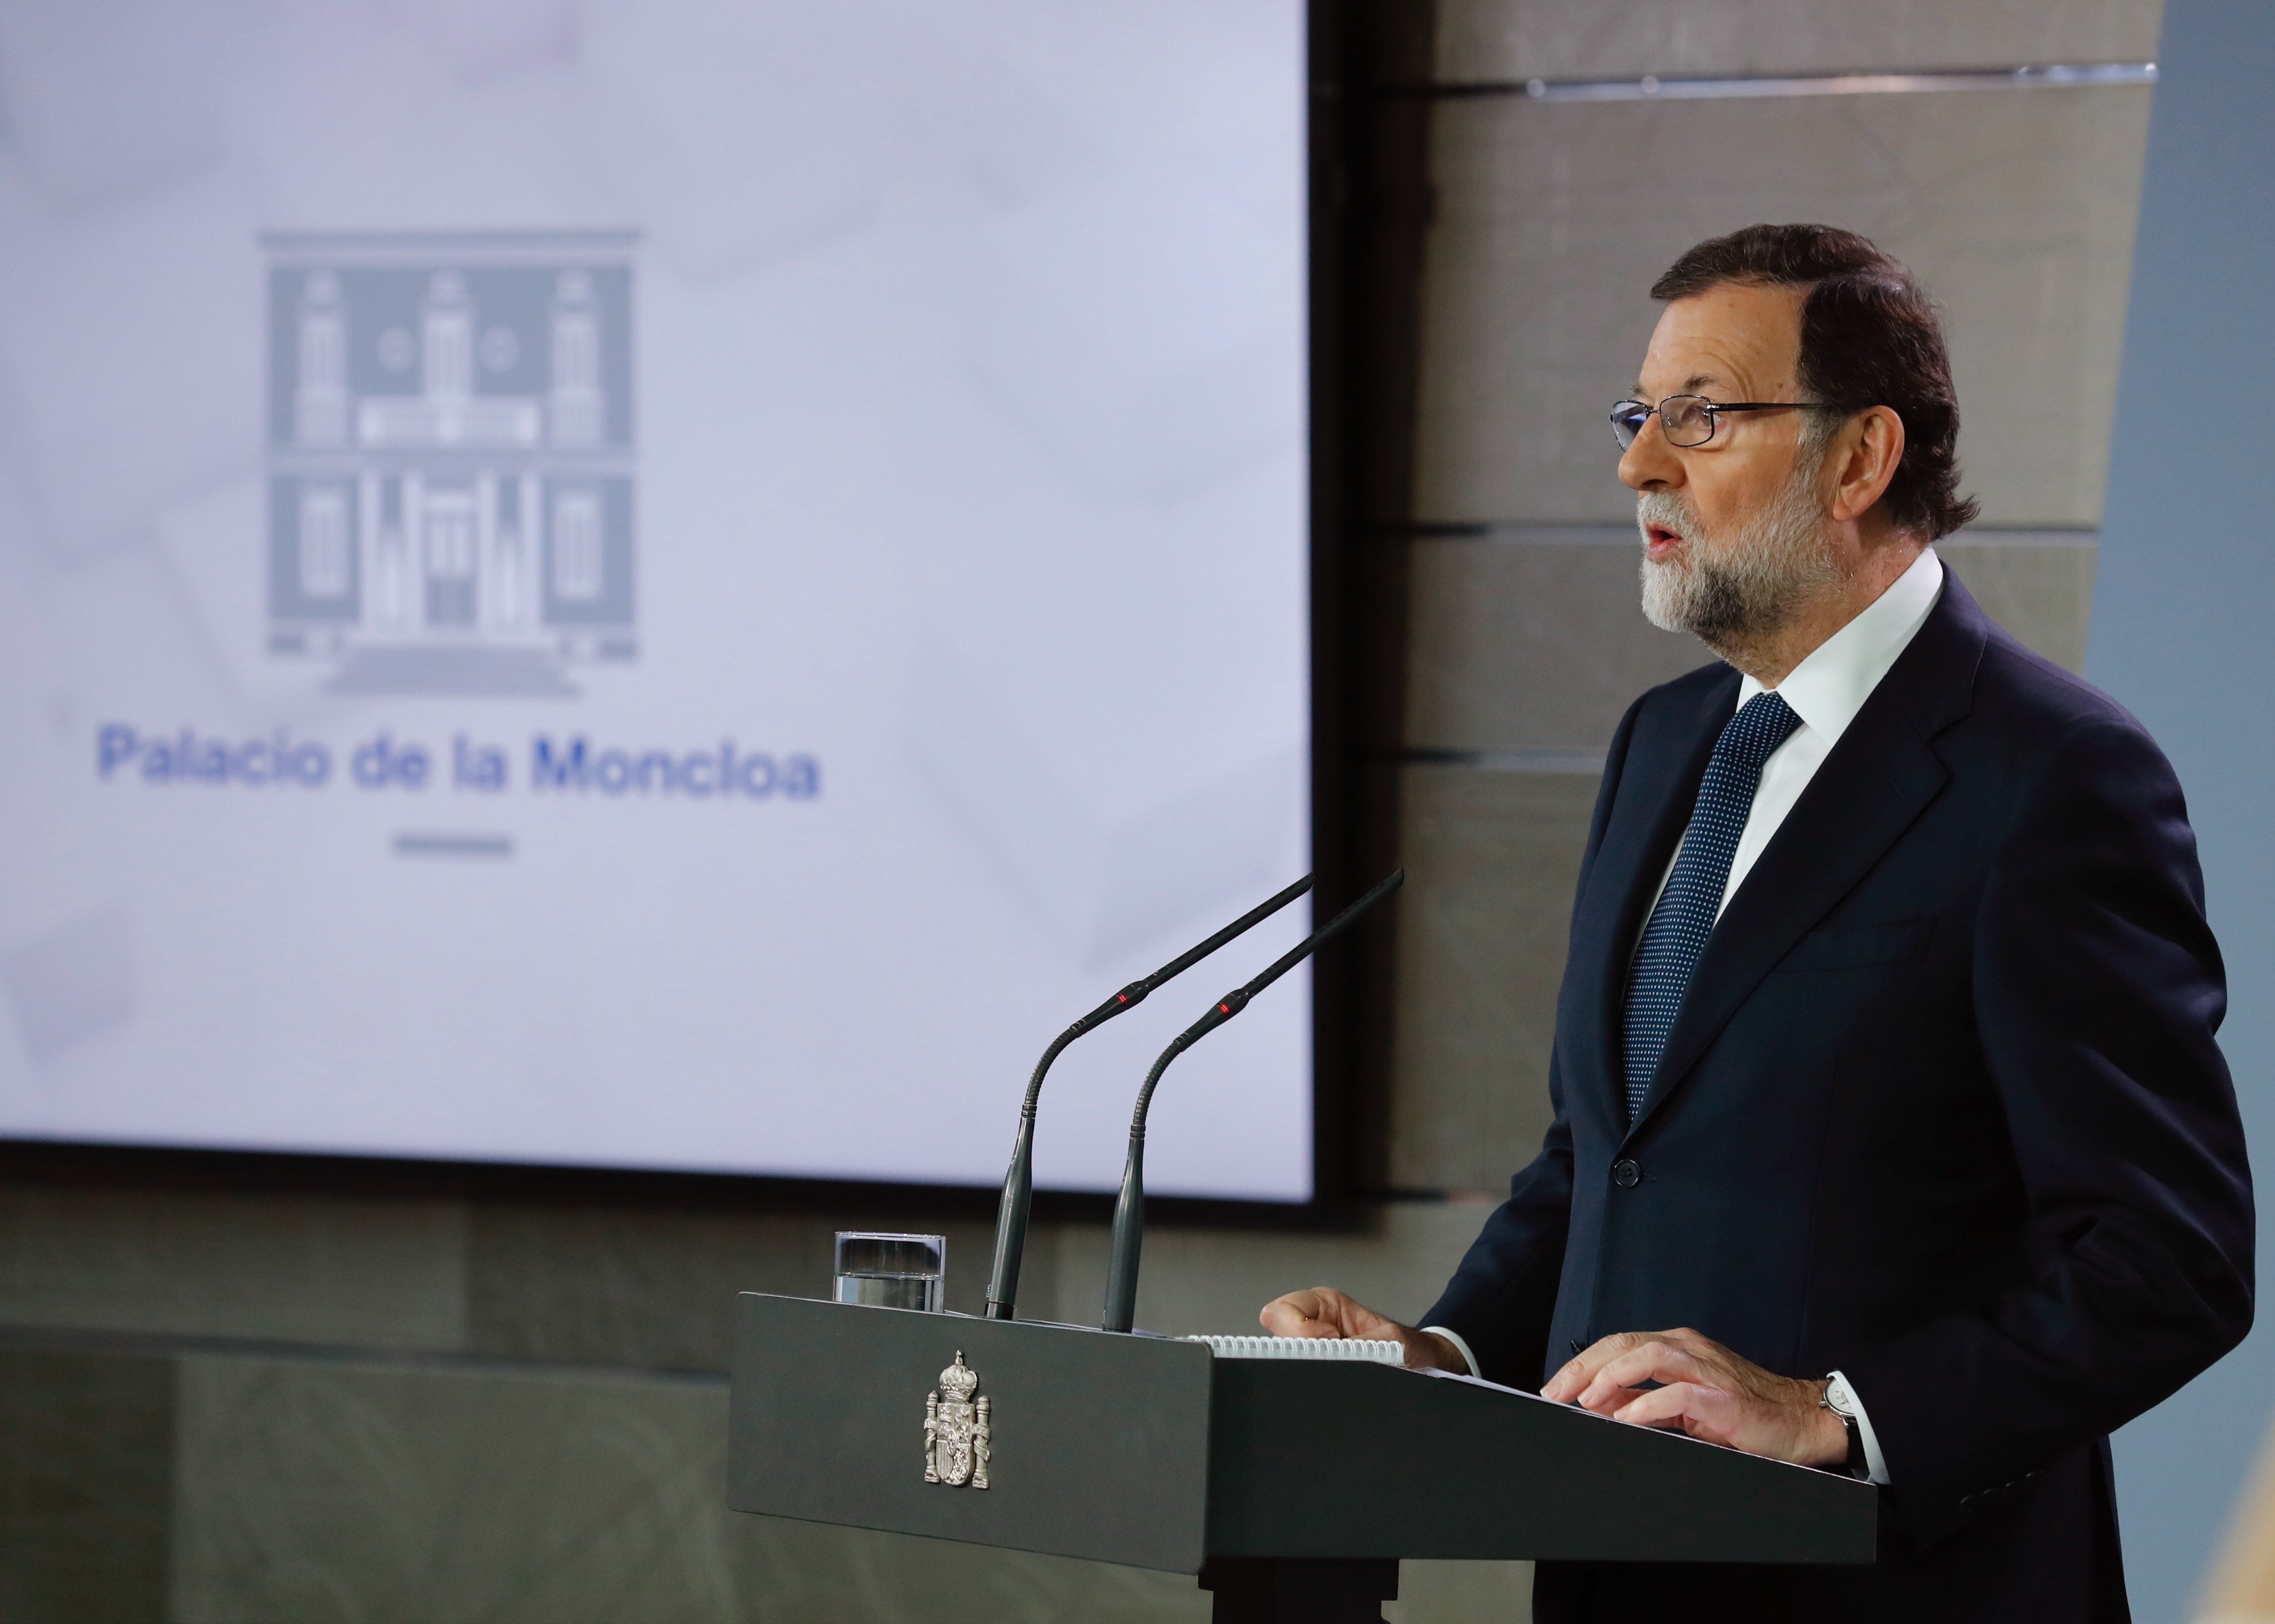 VÍDEO: Així ha obert Rajoy la via del 155